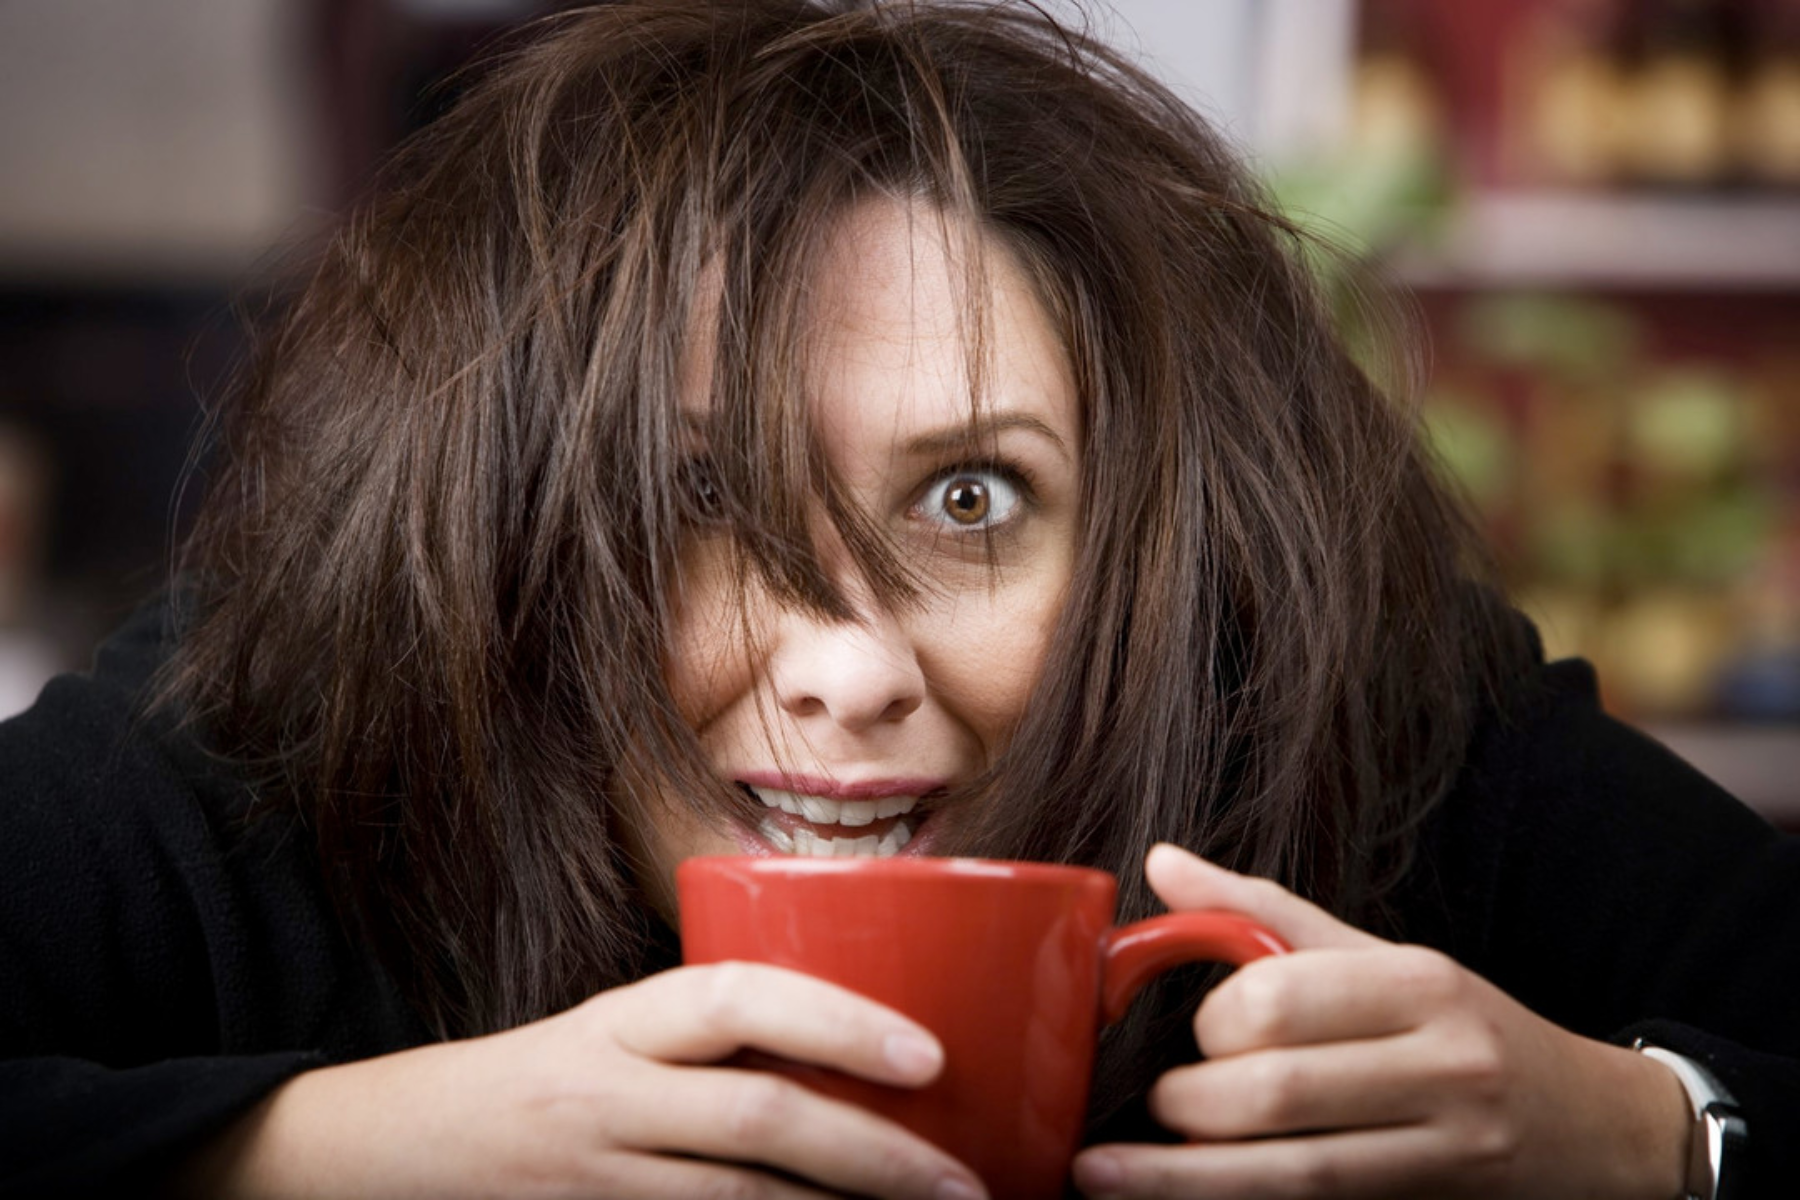 Καφεΐνη παρενέργειες: Οι πιο συχνές παρενέργειες της υπερβολικής κατανάλωσης καφεΐνης